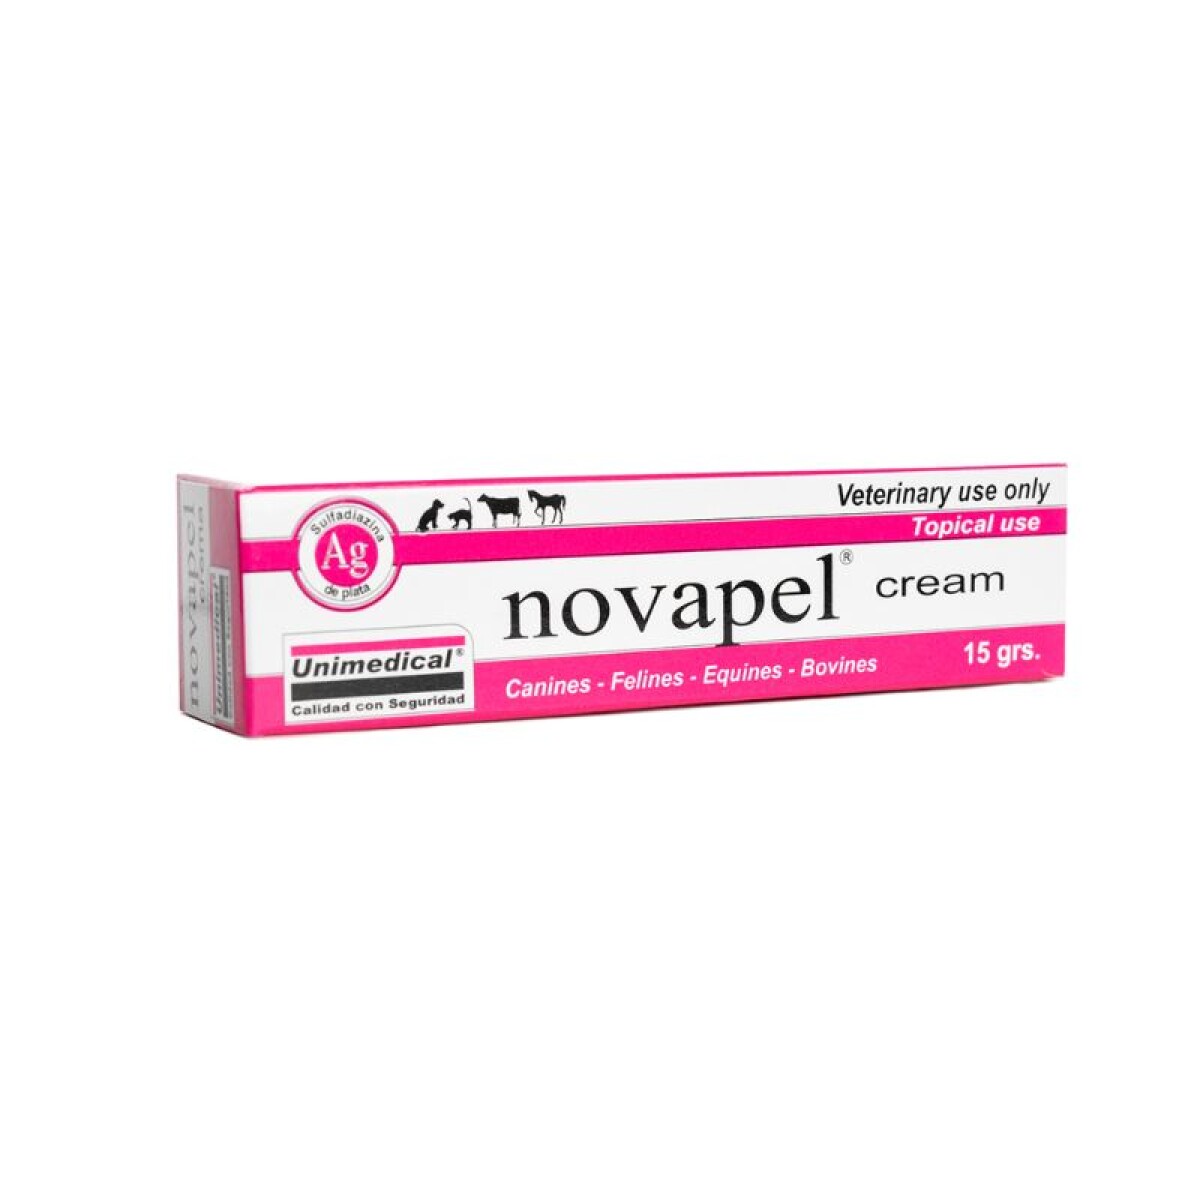 NOVAPEL CREMA - Novapel Crema 